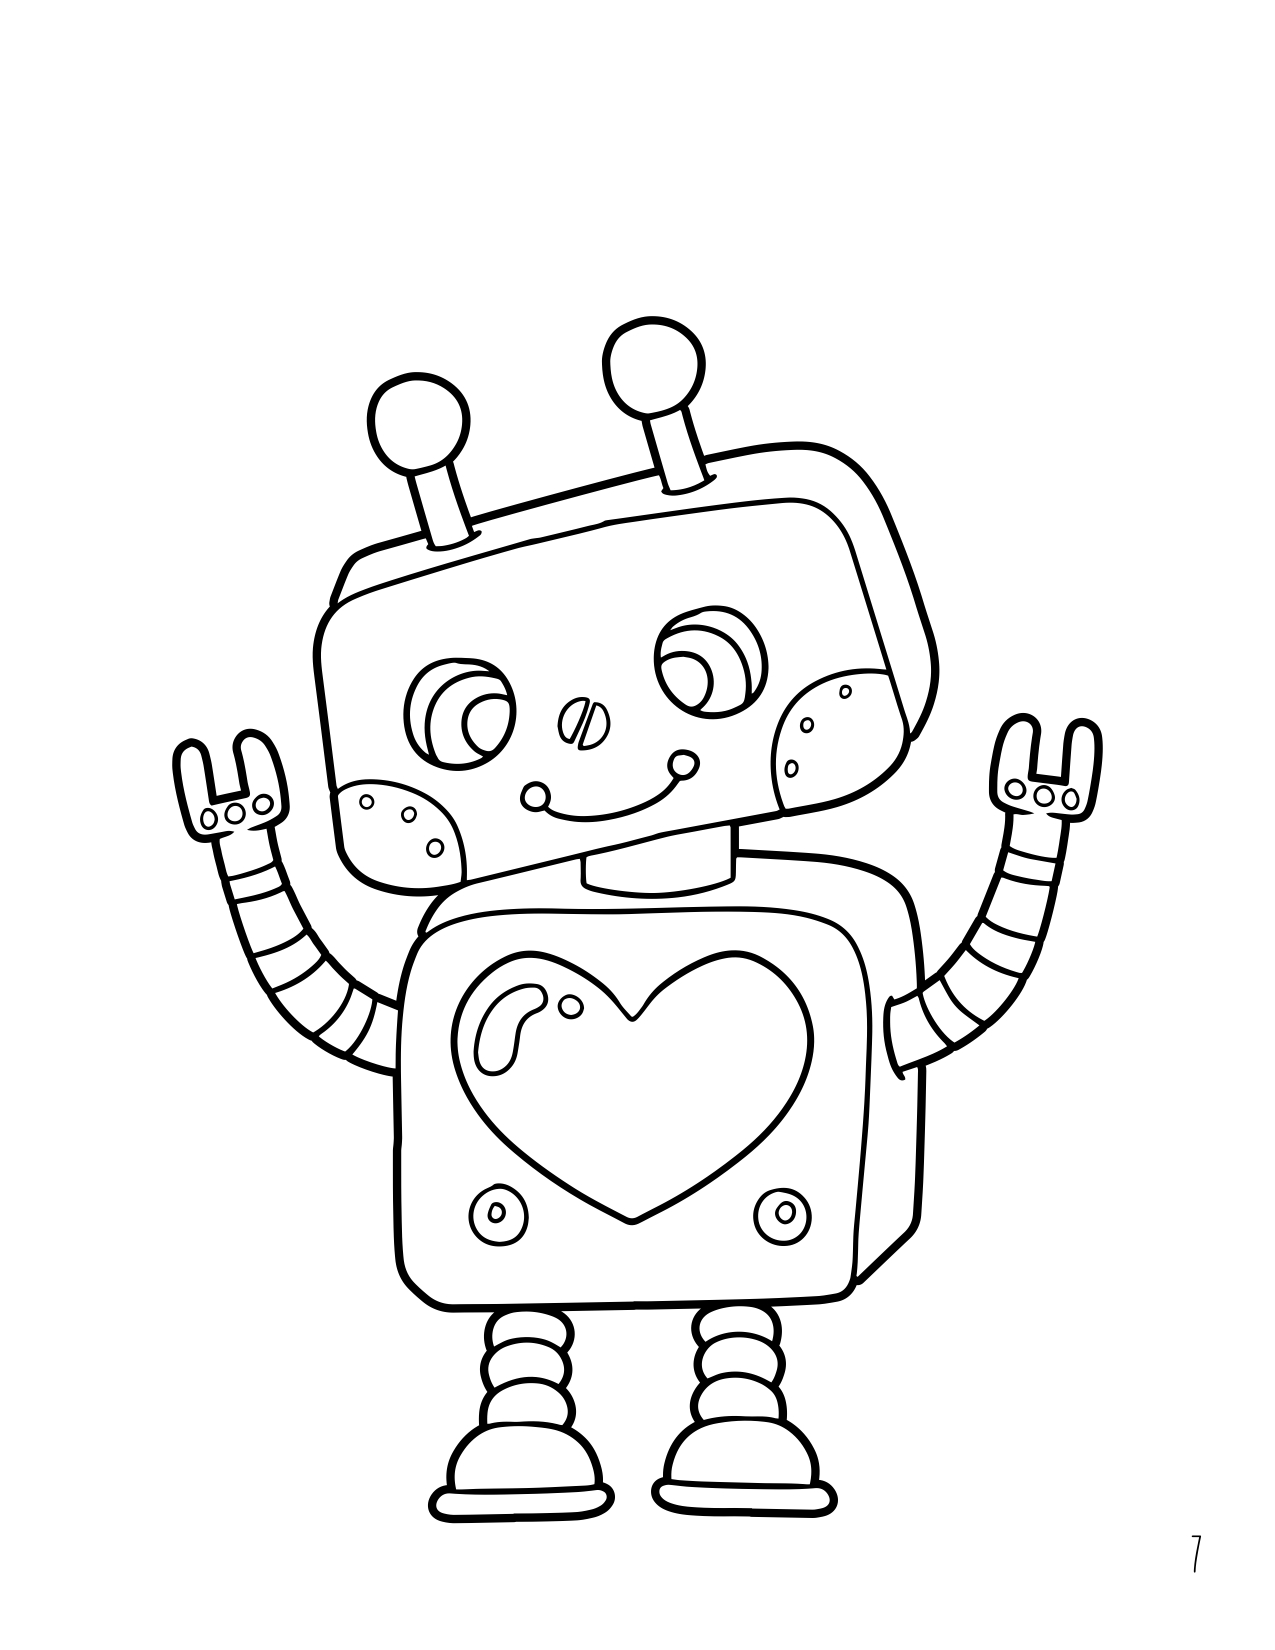 Disegno da colorare di robot stile cartoon per bambini